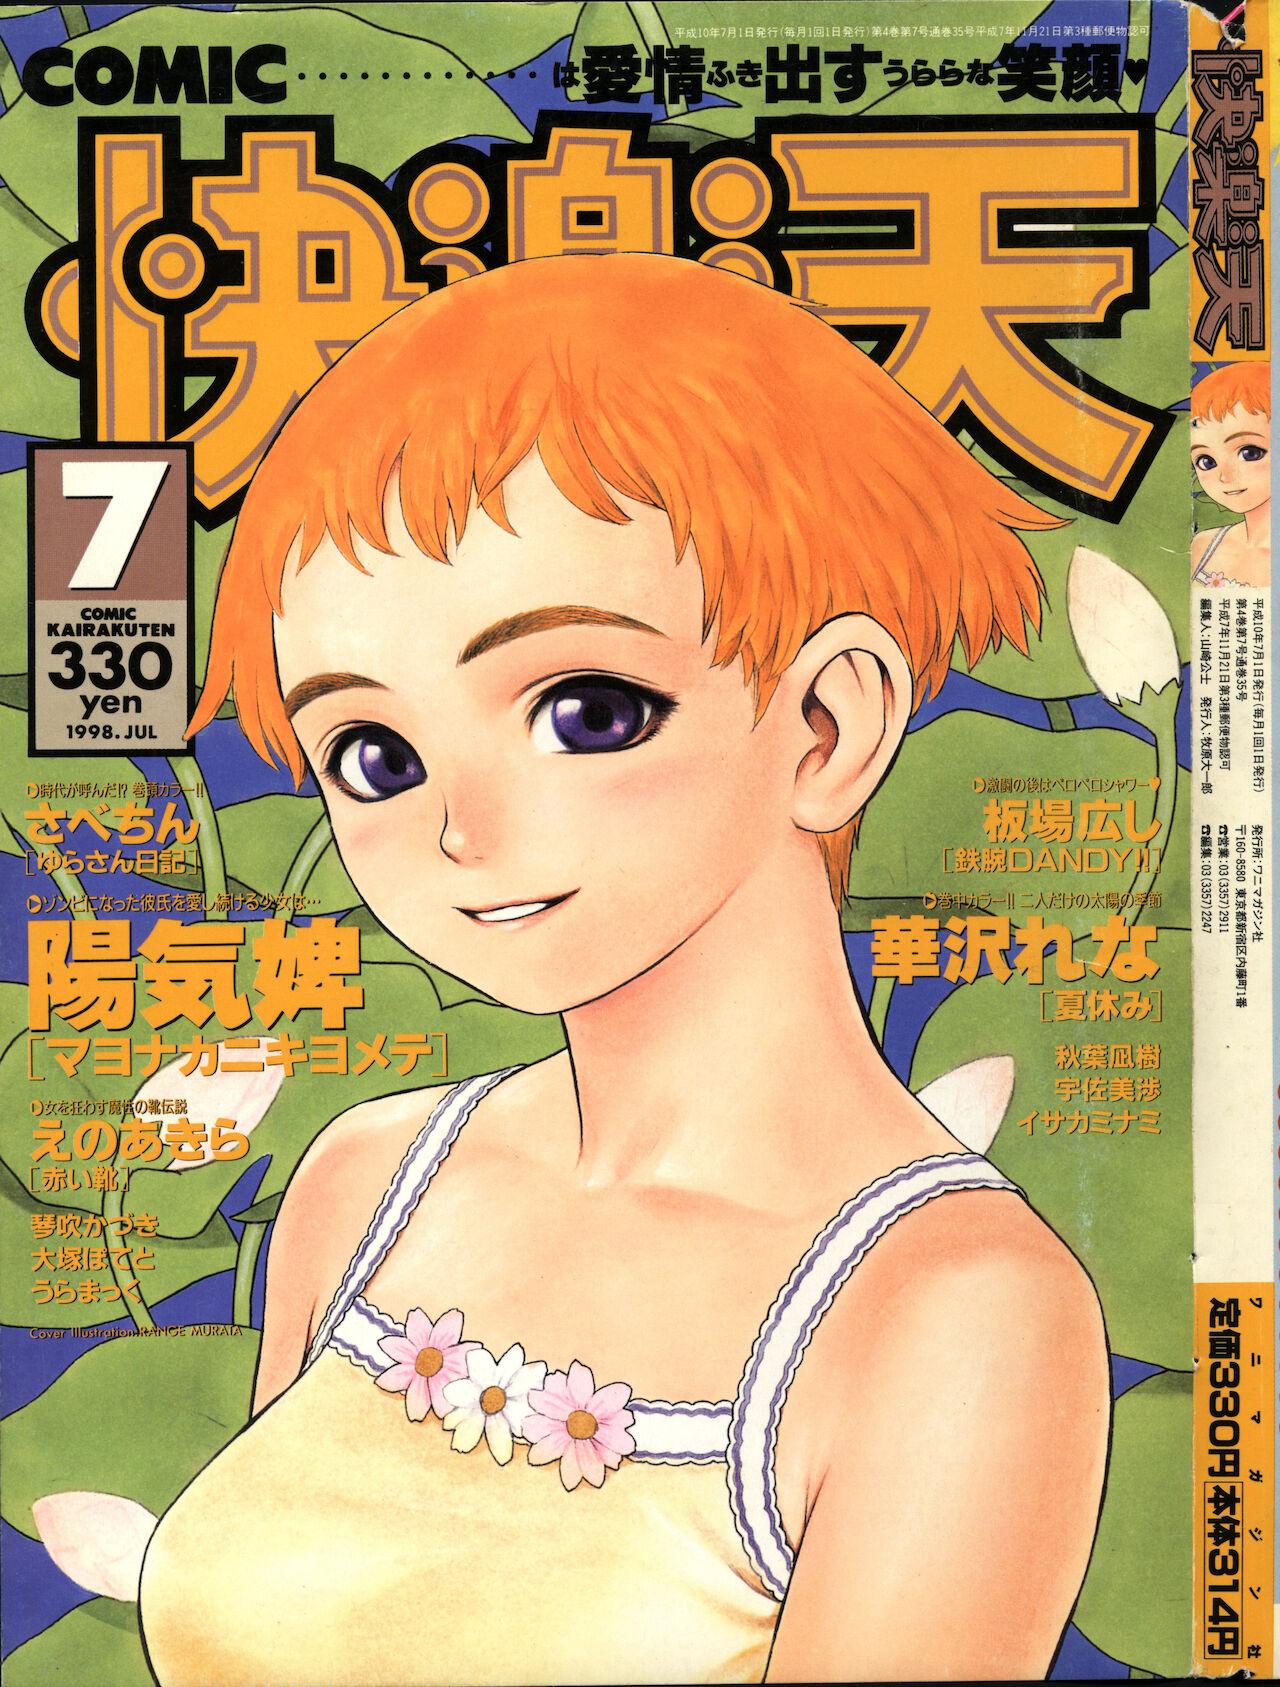 COMIC Kairakuten 7.1998 0